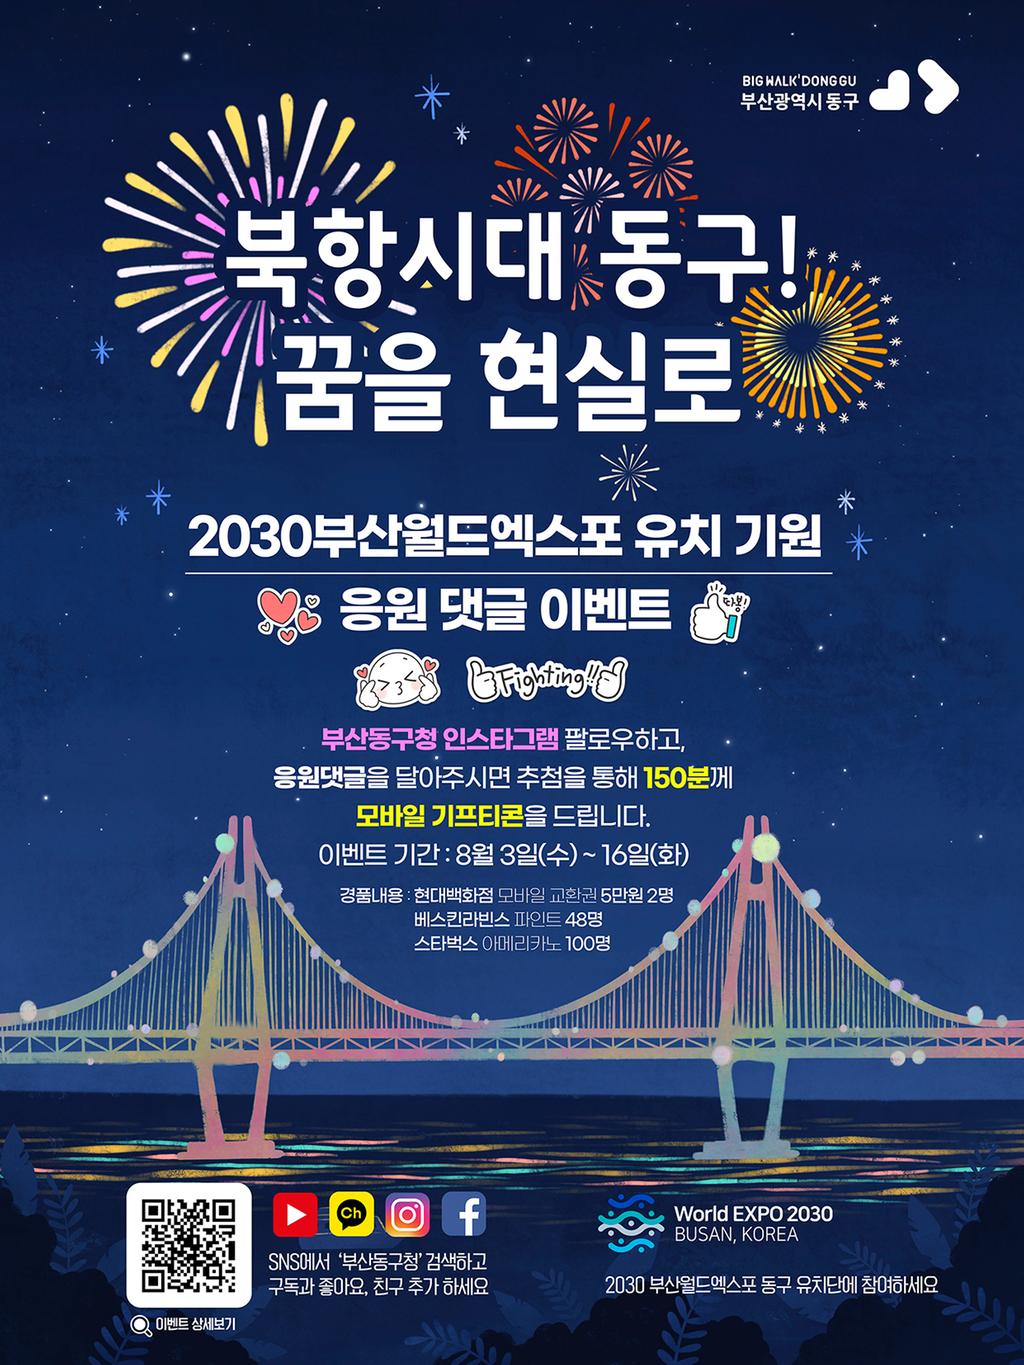 2030부산월드엑스포 유치기원 댓글 이벤트 포스트